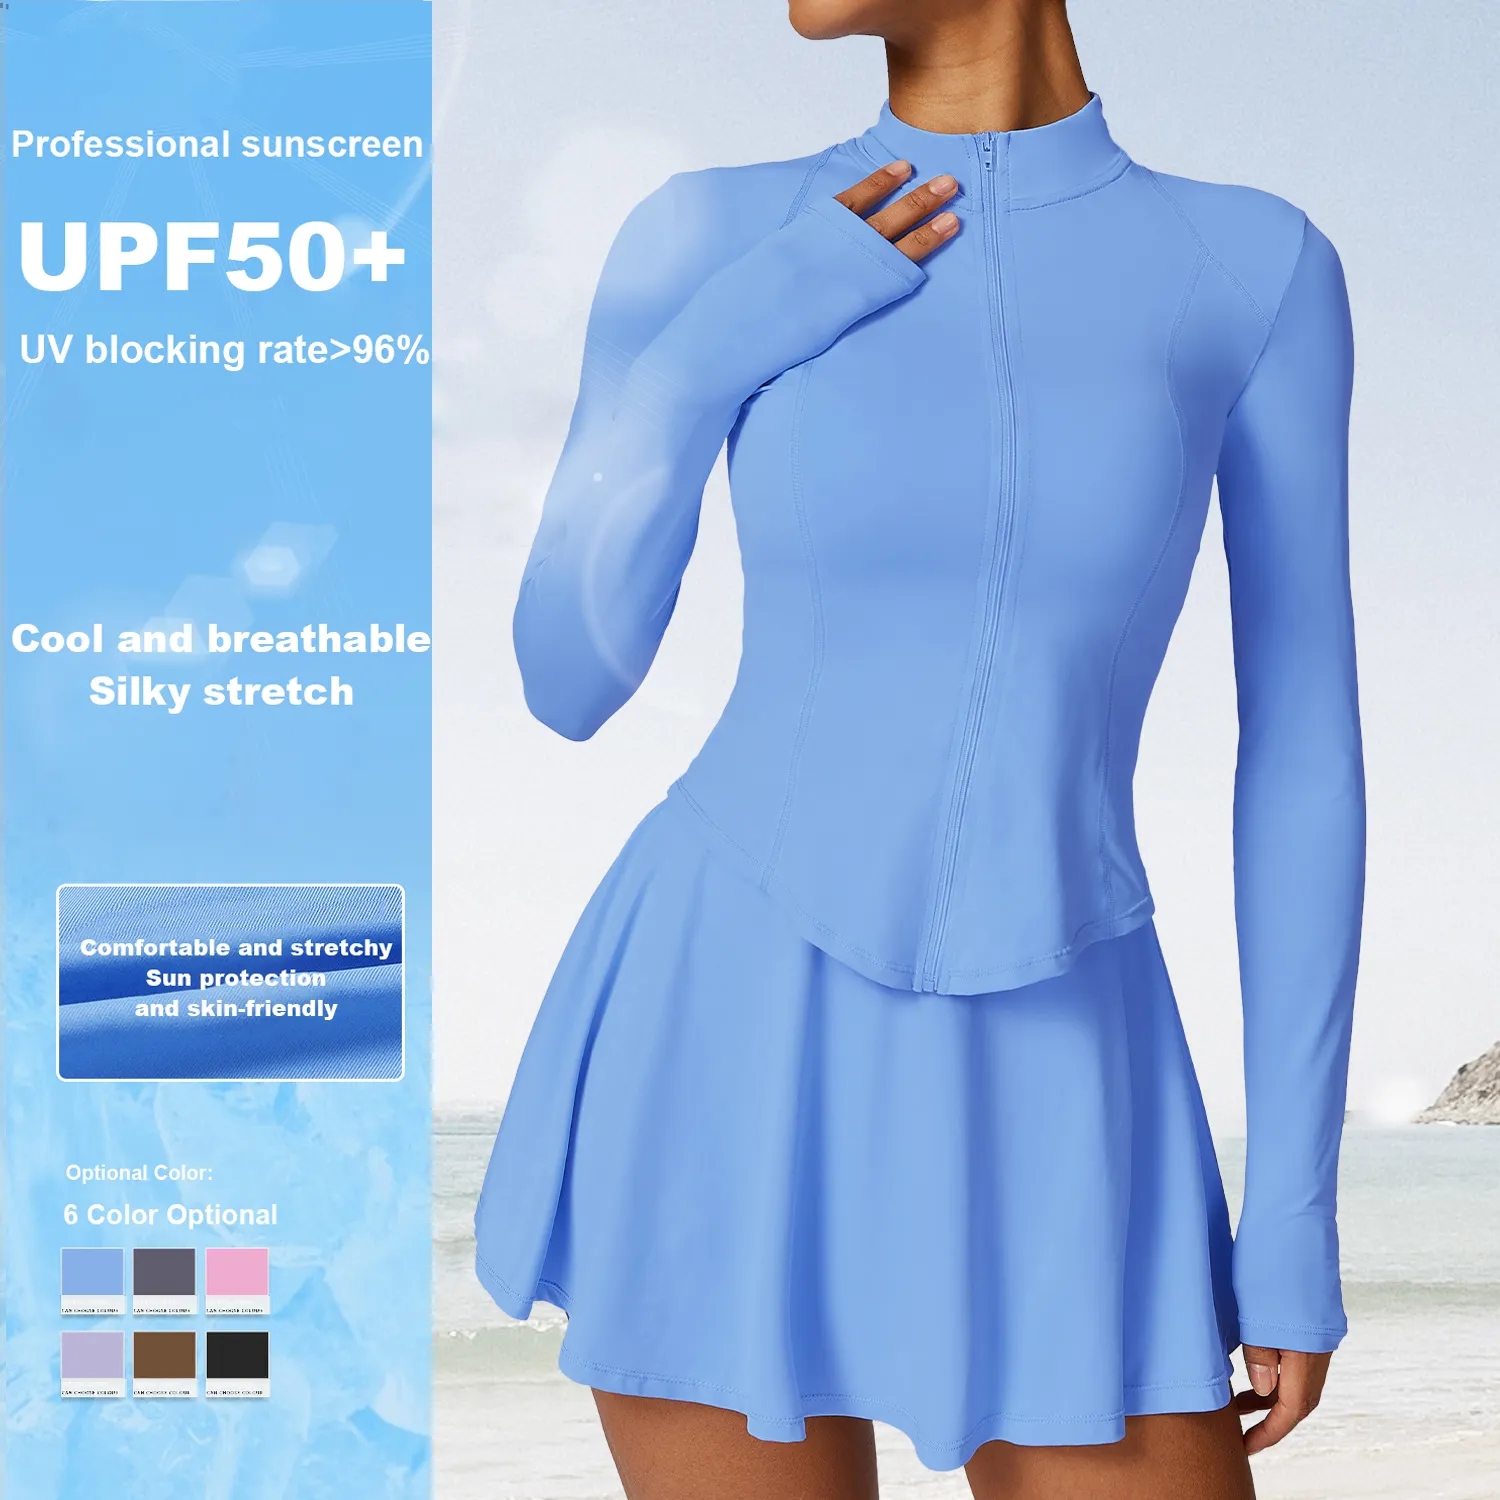 Sommersport Sonnenschutzbekleidung Upf 50+ langärmlig Anti-UV-Schutz-Top Sport atmungsaktiv Damen-Sonnenschutzjacke